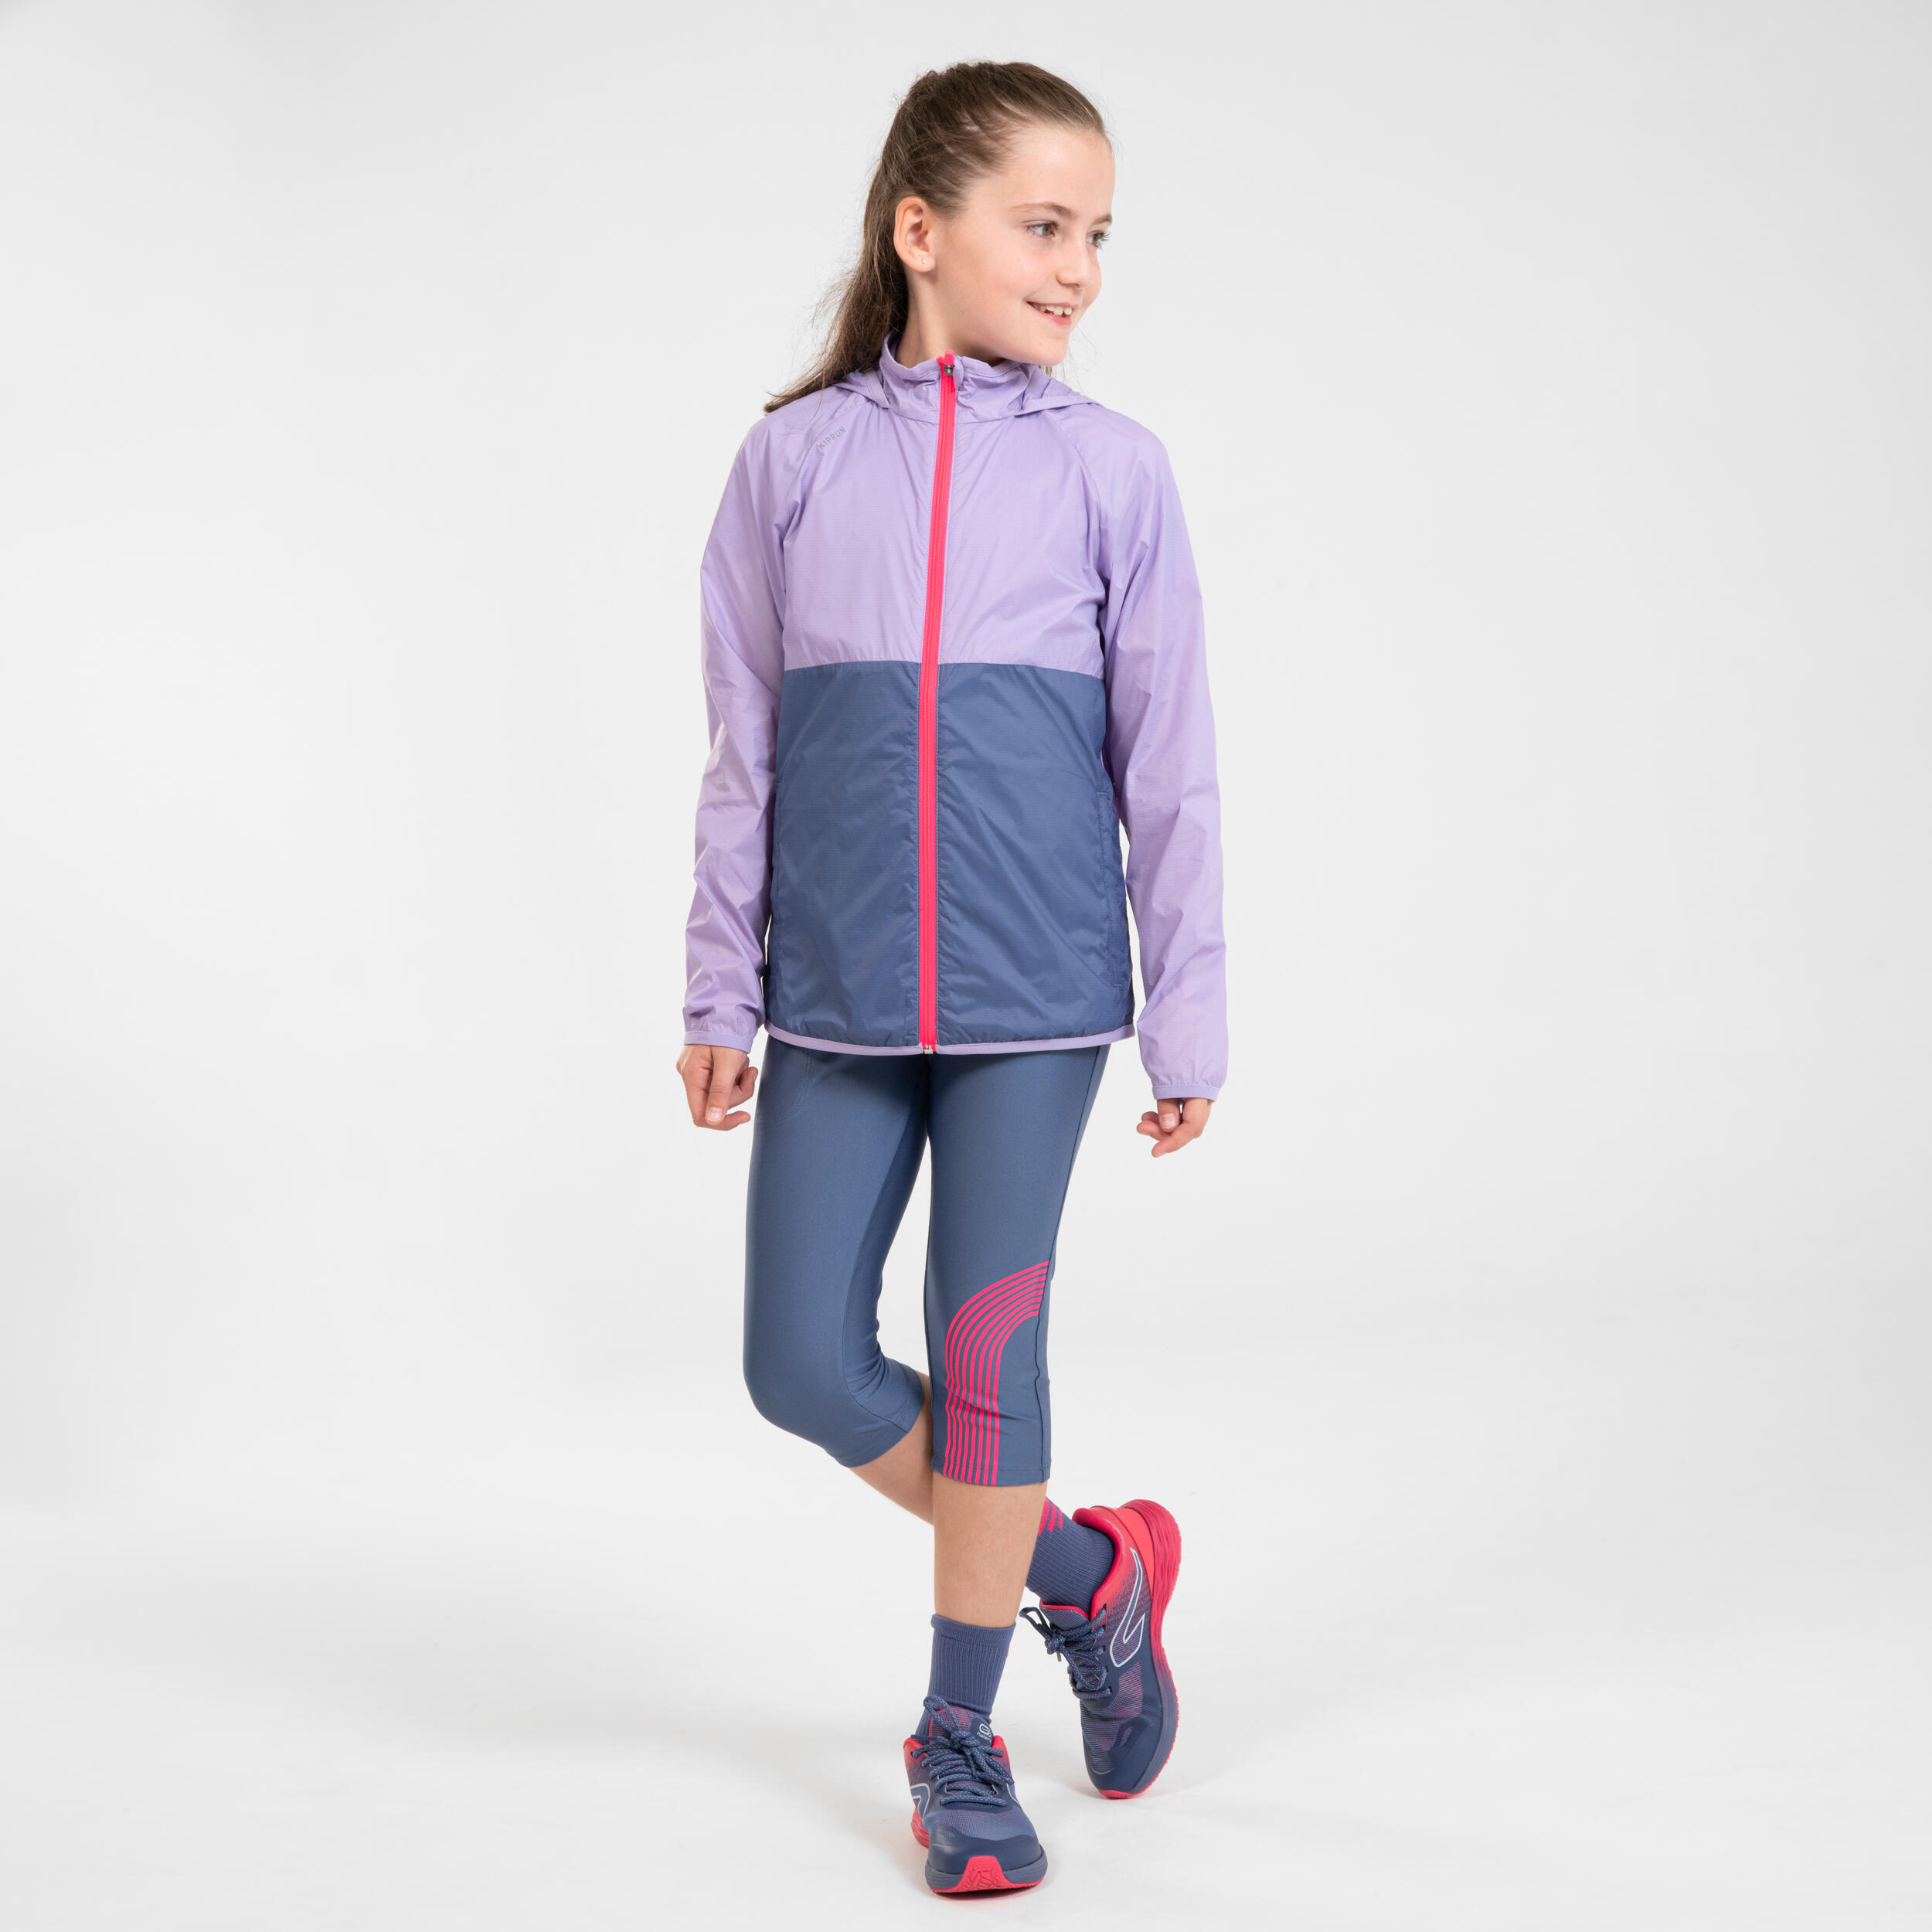 Kids' running leggings - KIPRUN DRY - grey pink 3/14